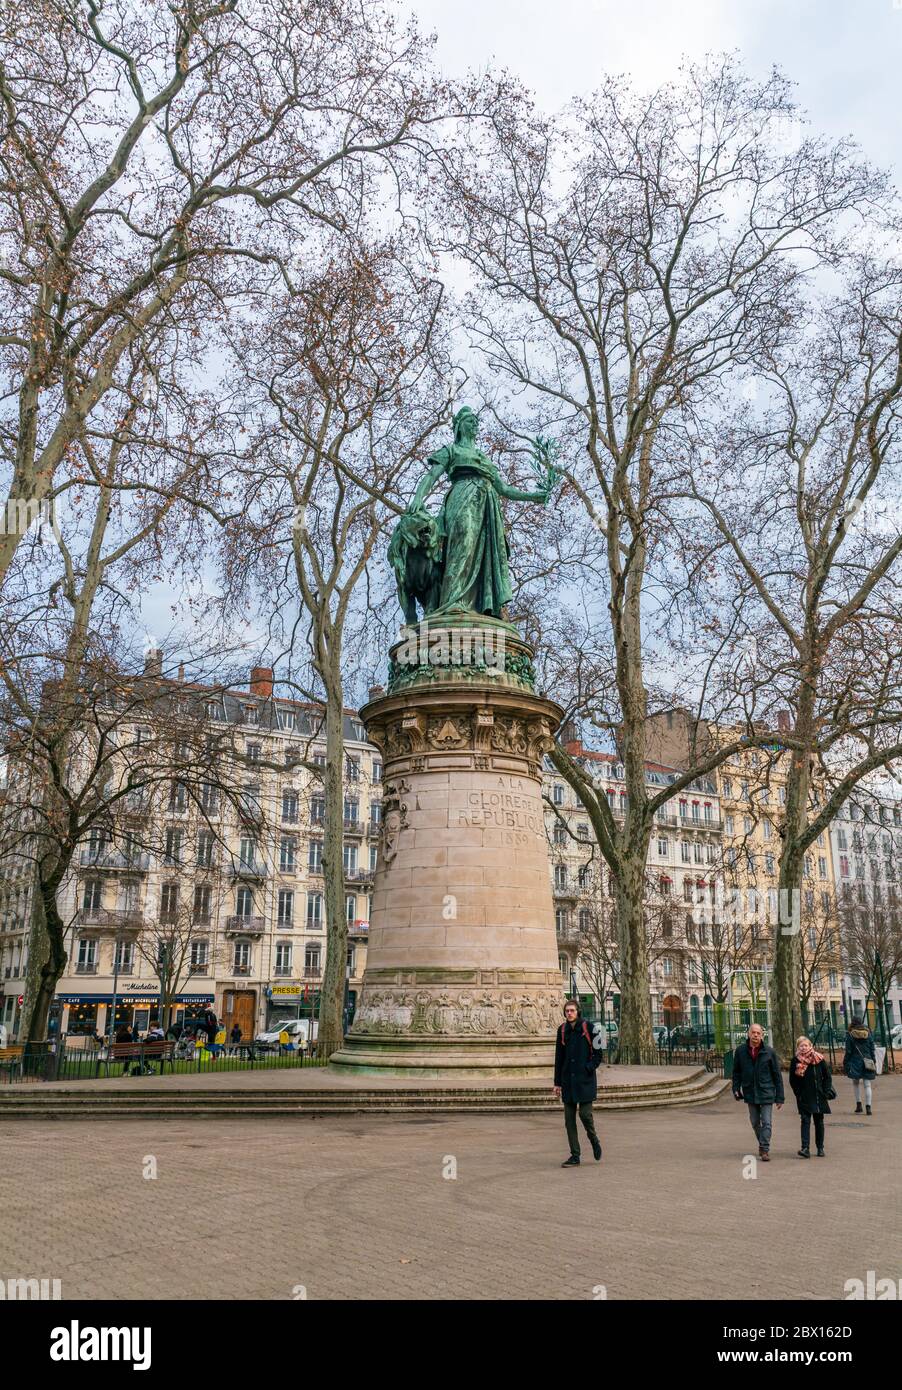 Lione, Francia 3 gennaio 2020 - Statua della Repubblica (Statua della République) sulla Place Carnot nel centro di Lione Foto Stock